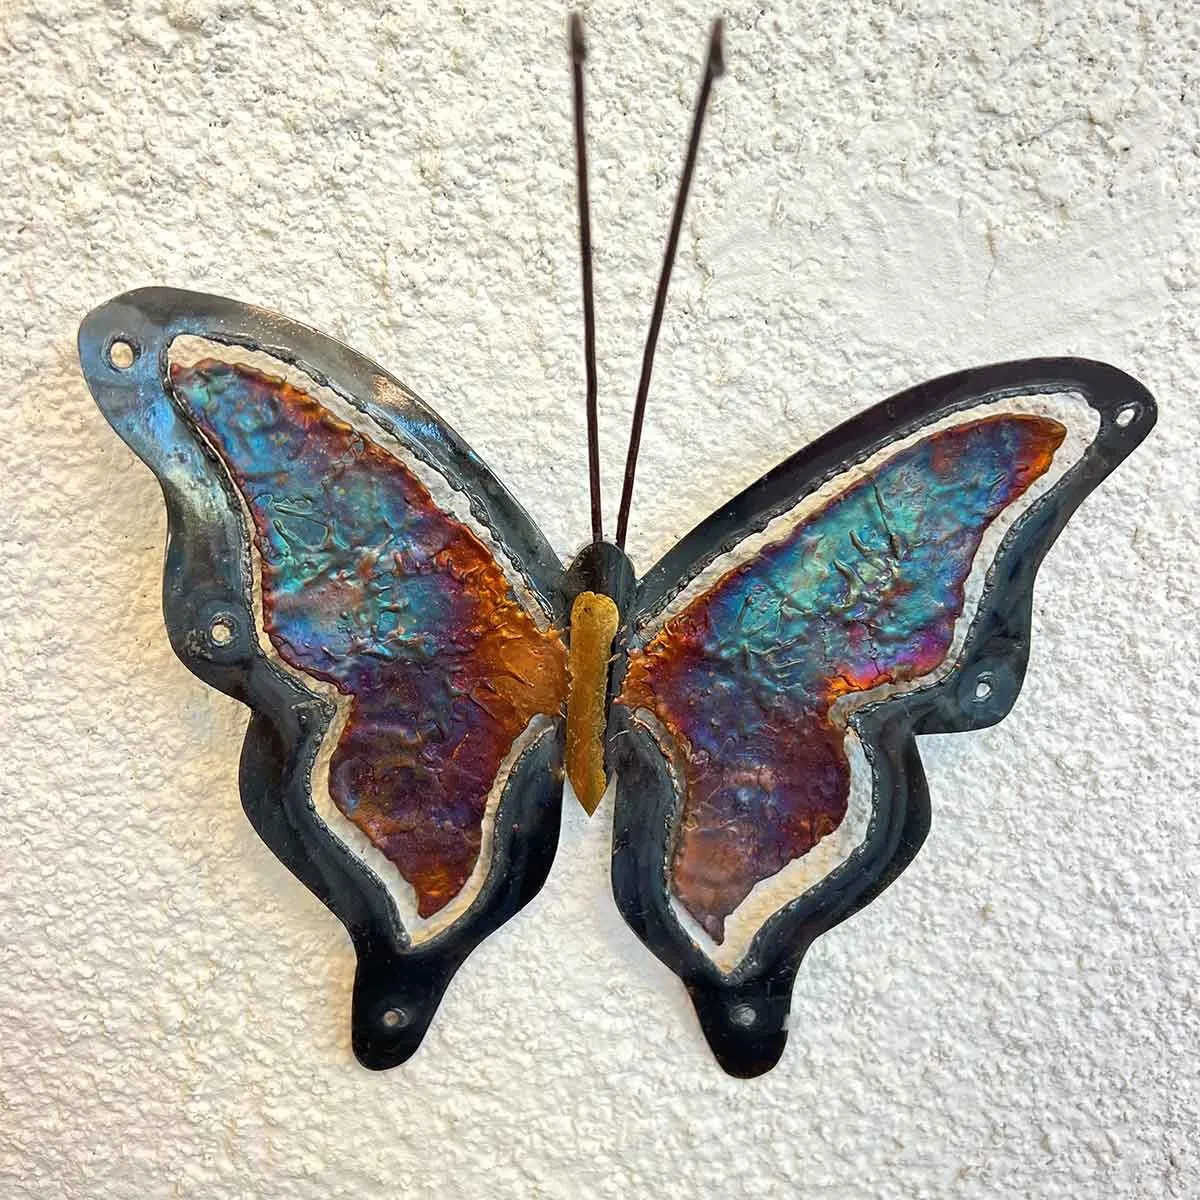 Décoration murale en métal - Saison des papillons - L 119,5 x H 59 cm